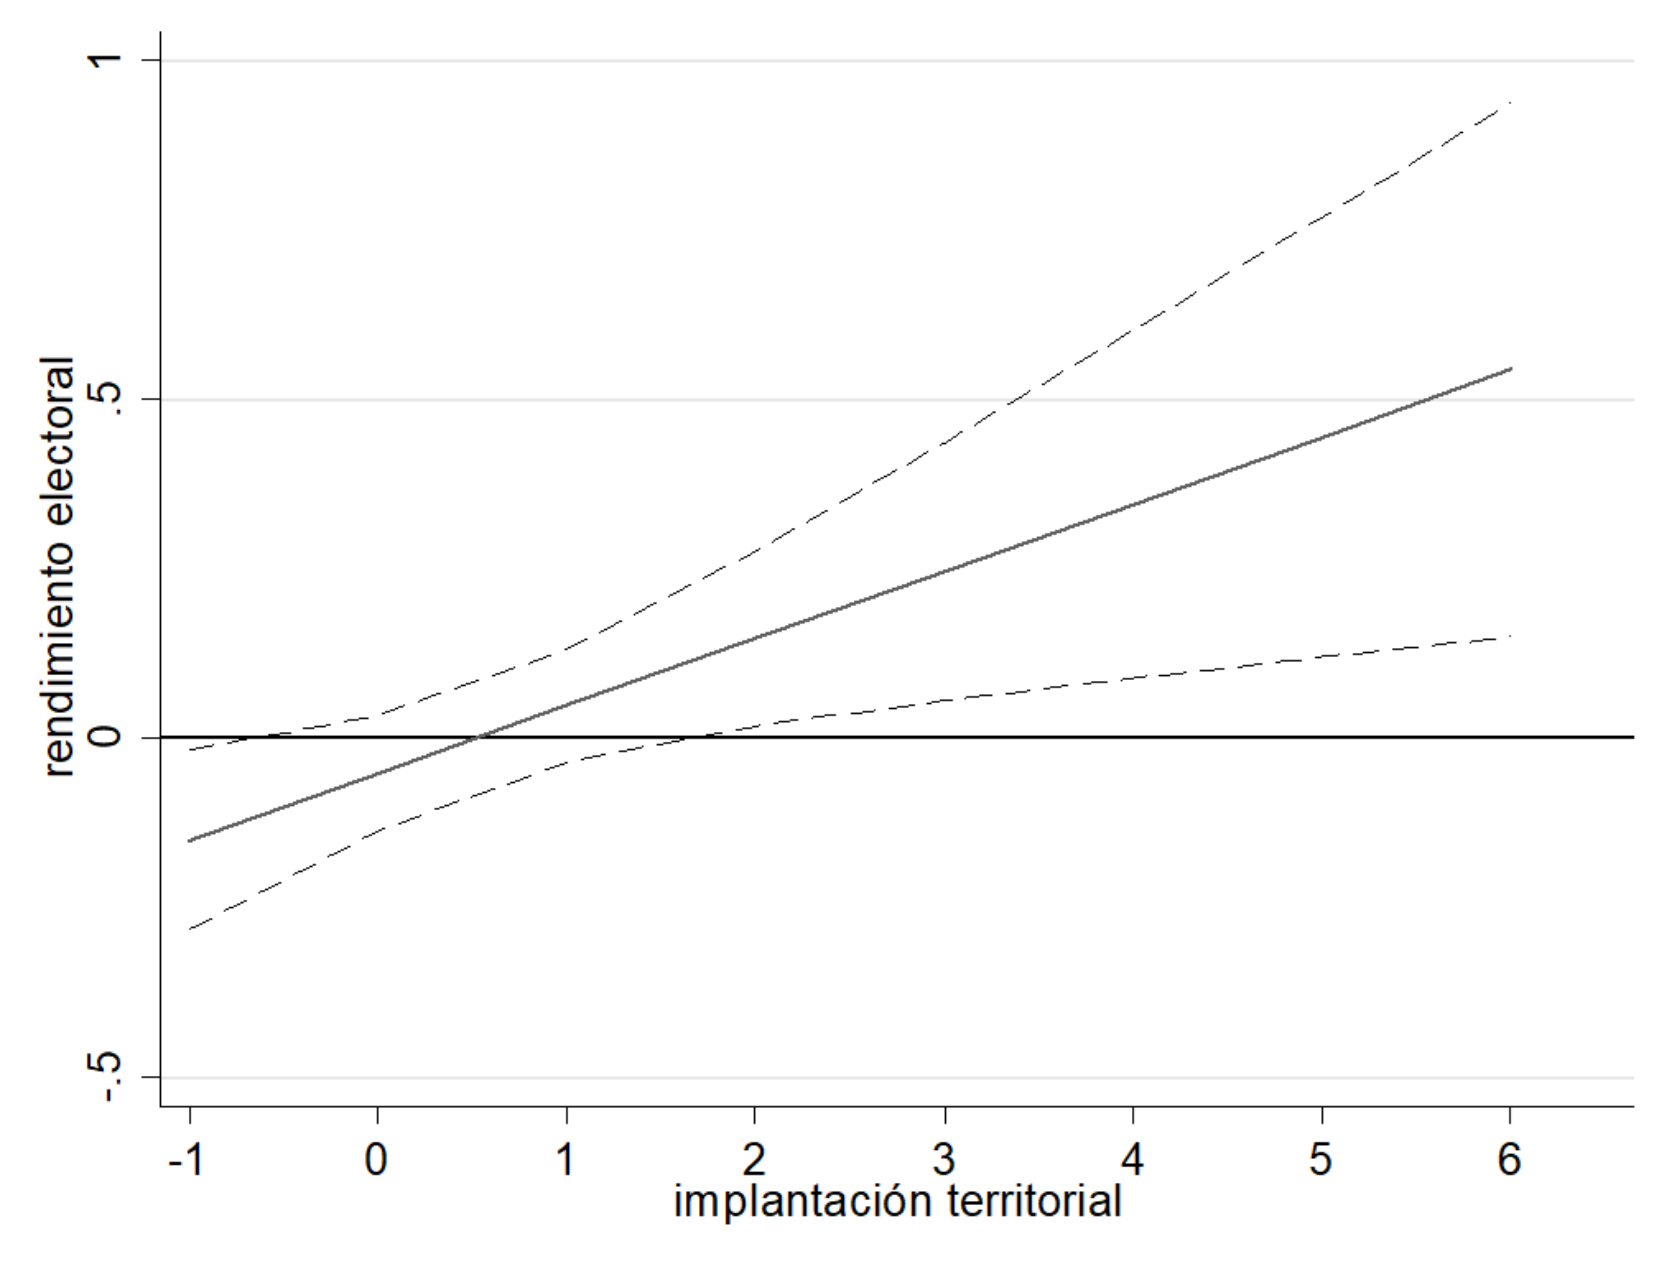 Efectos marginales de estatus socioeconómico de candidatos condicionado a implantación territorial (intervalos de confianza 95%)